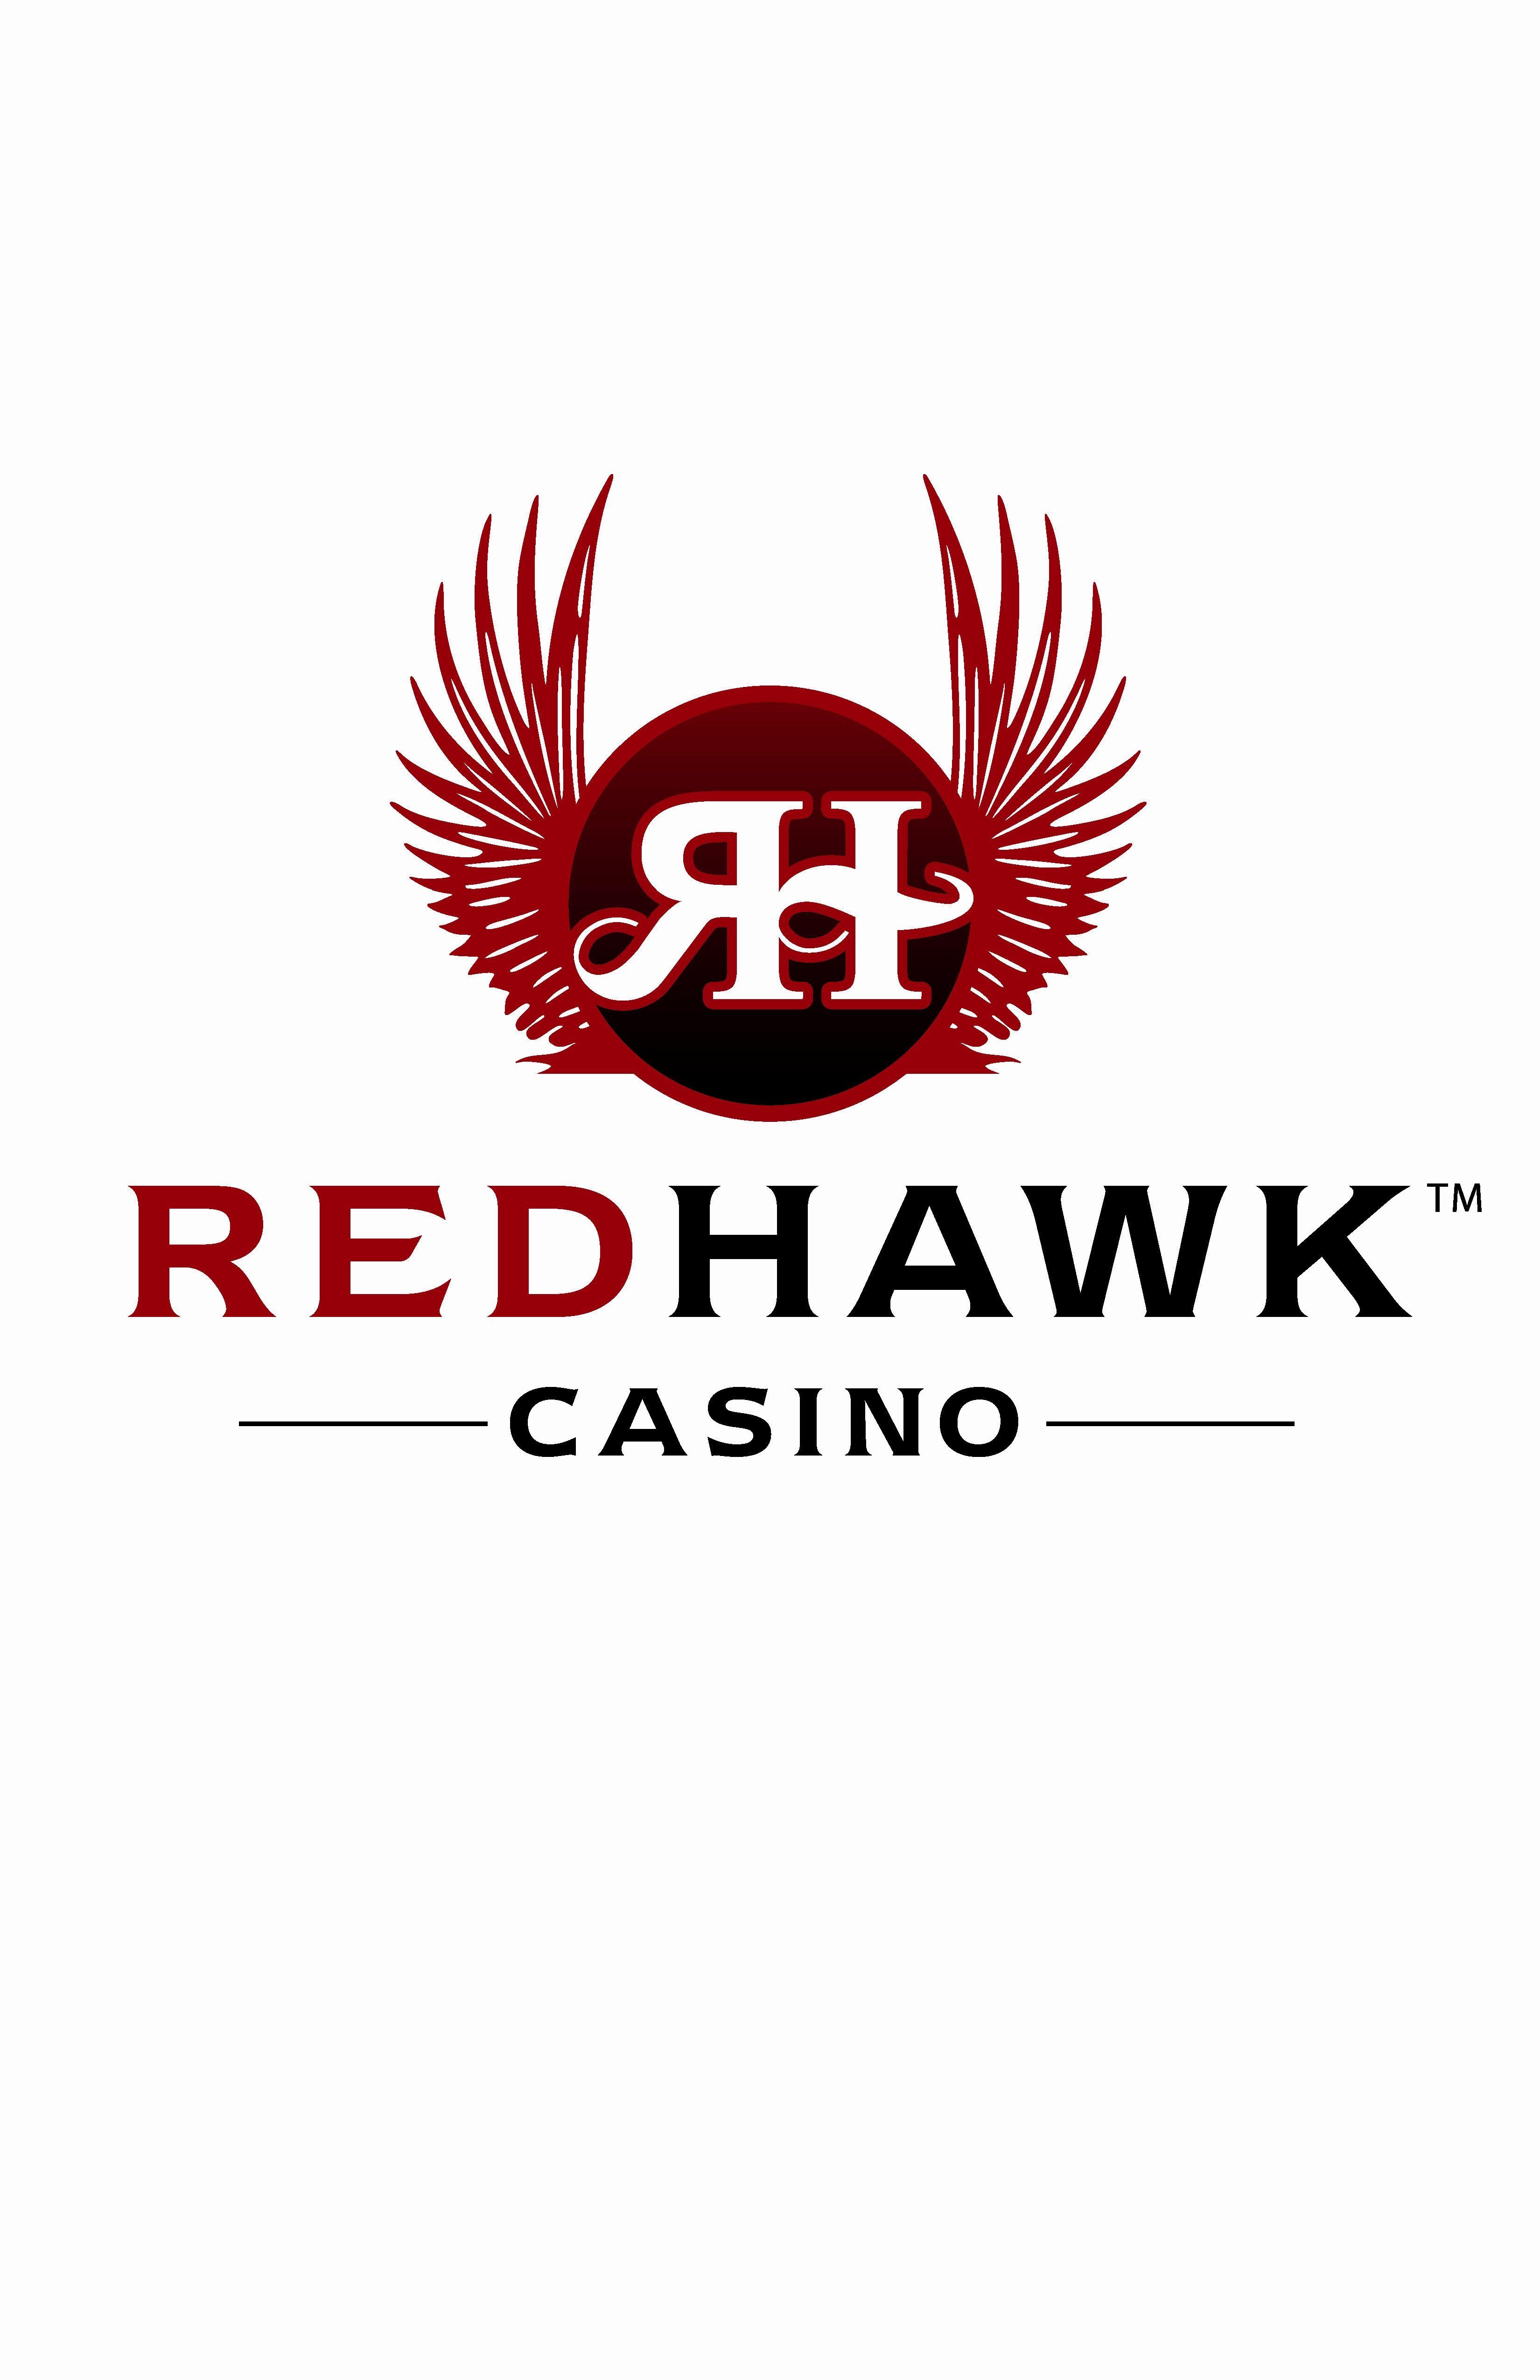 red hawk casino hours money jobs